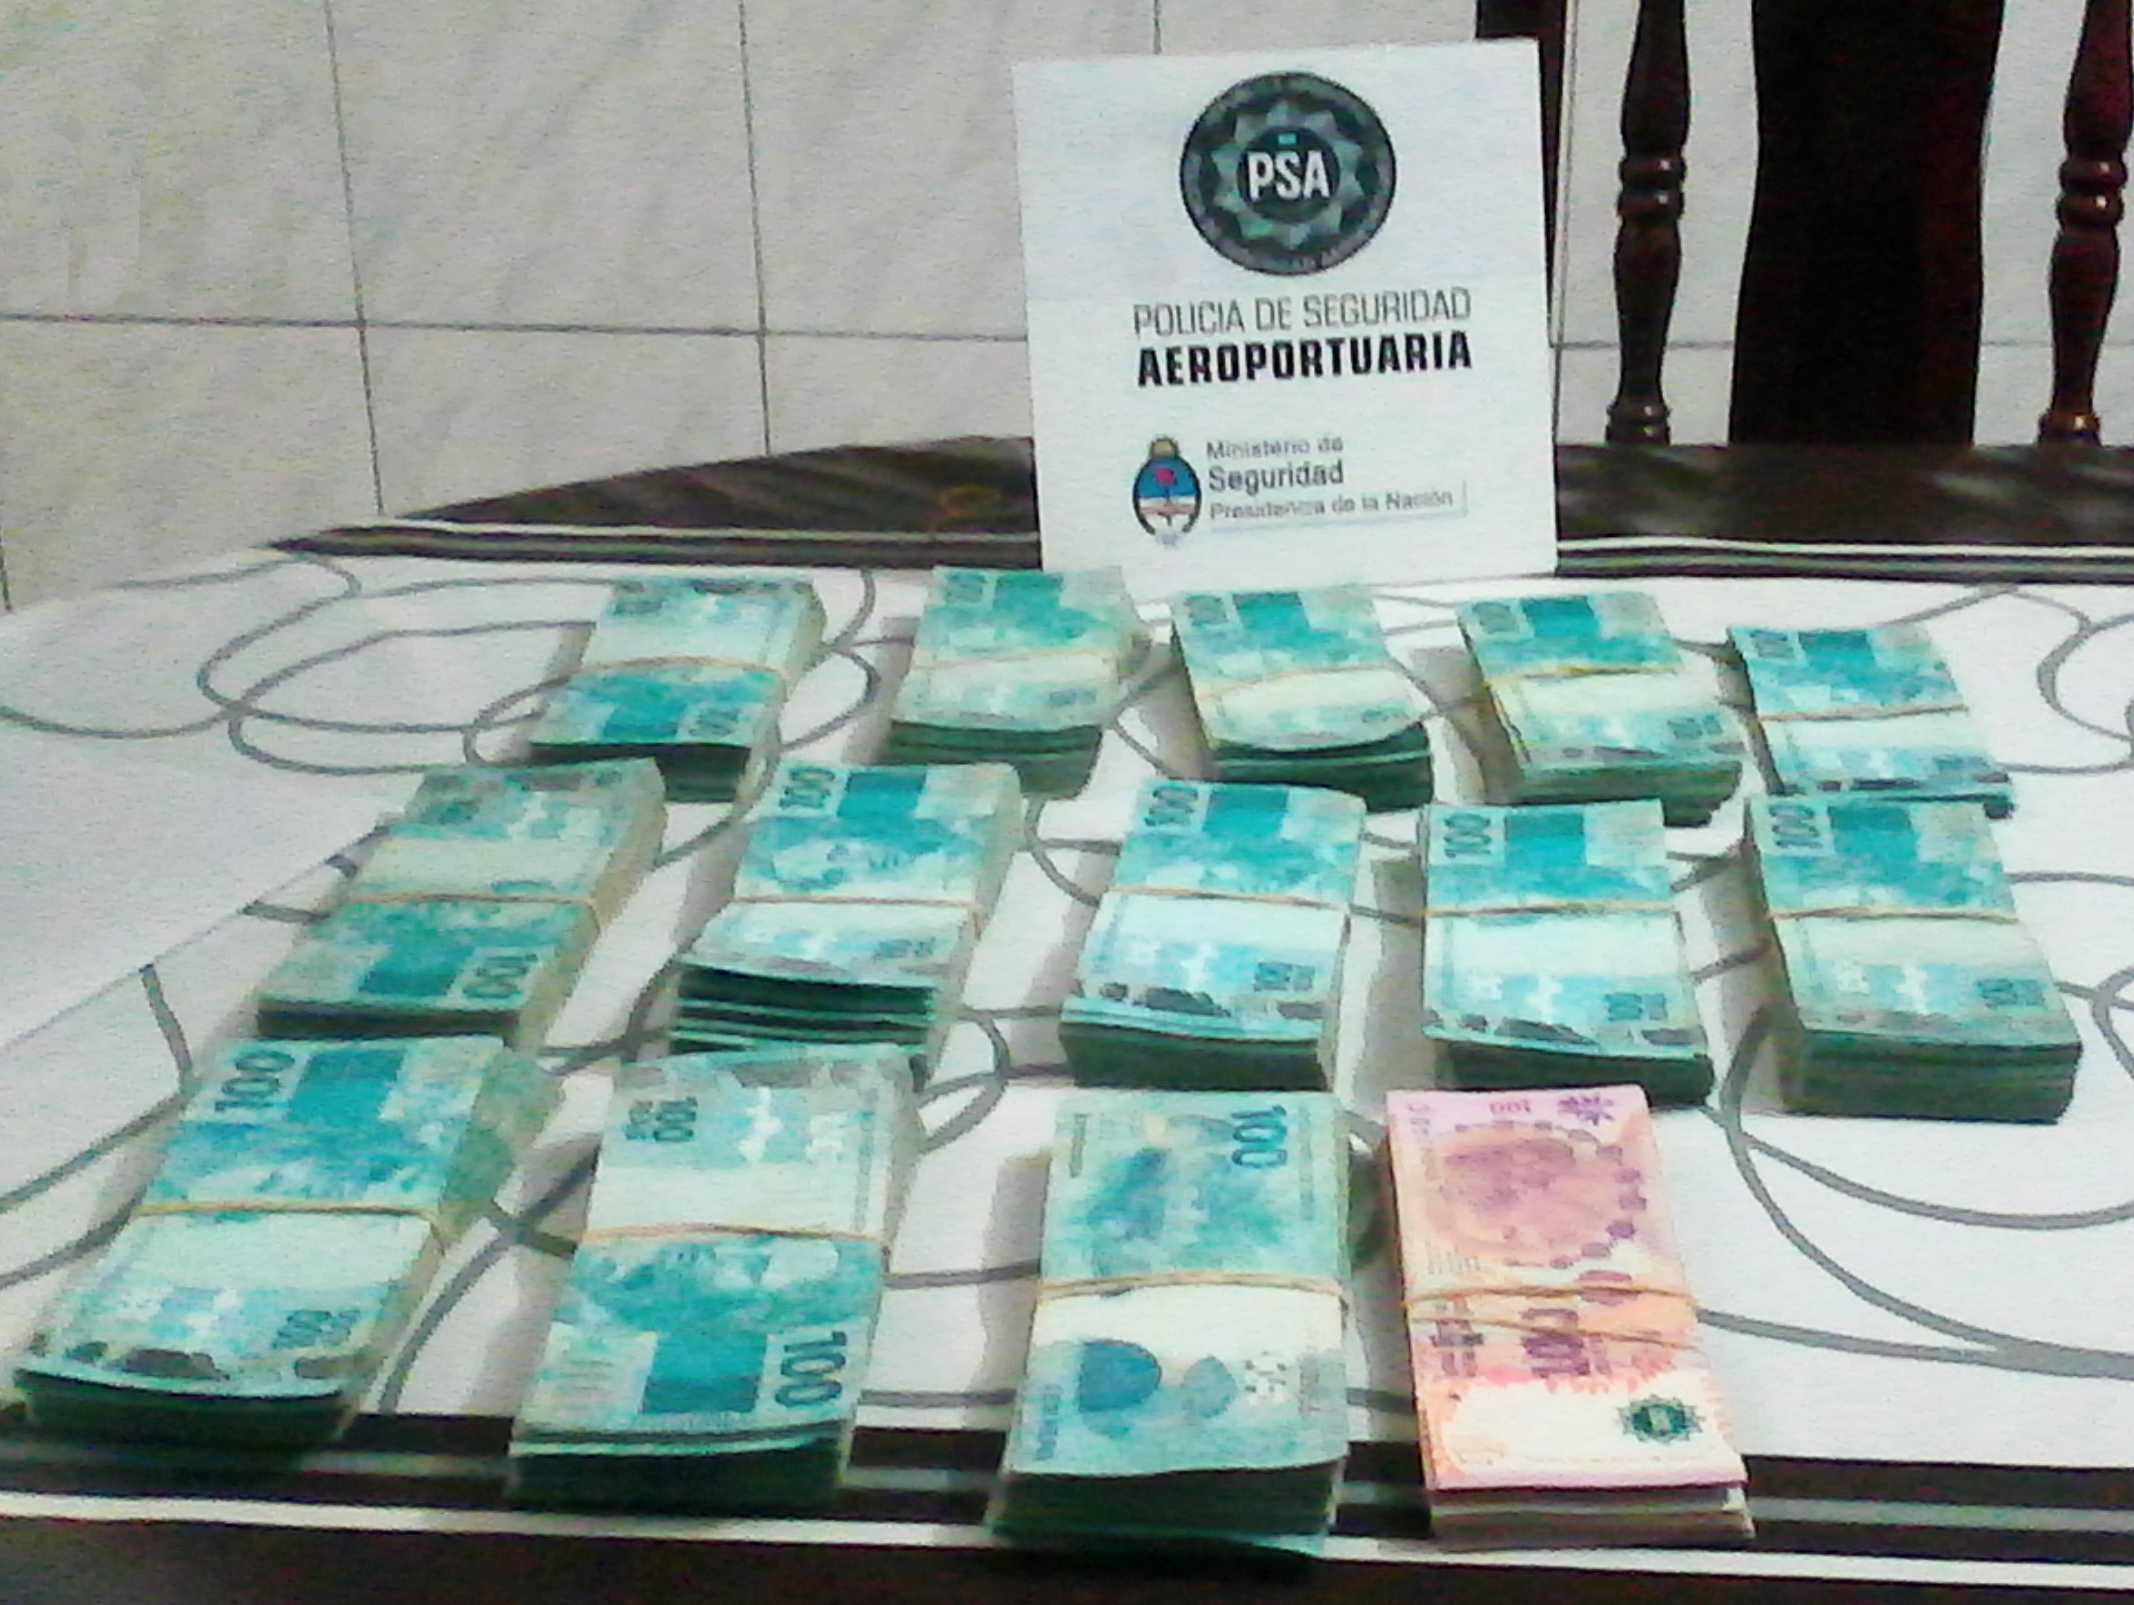 La PSA desbarató una banda dedicada al contrabando de divisas y lavado de dinero